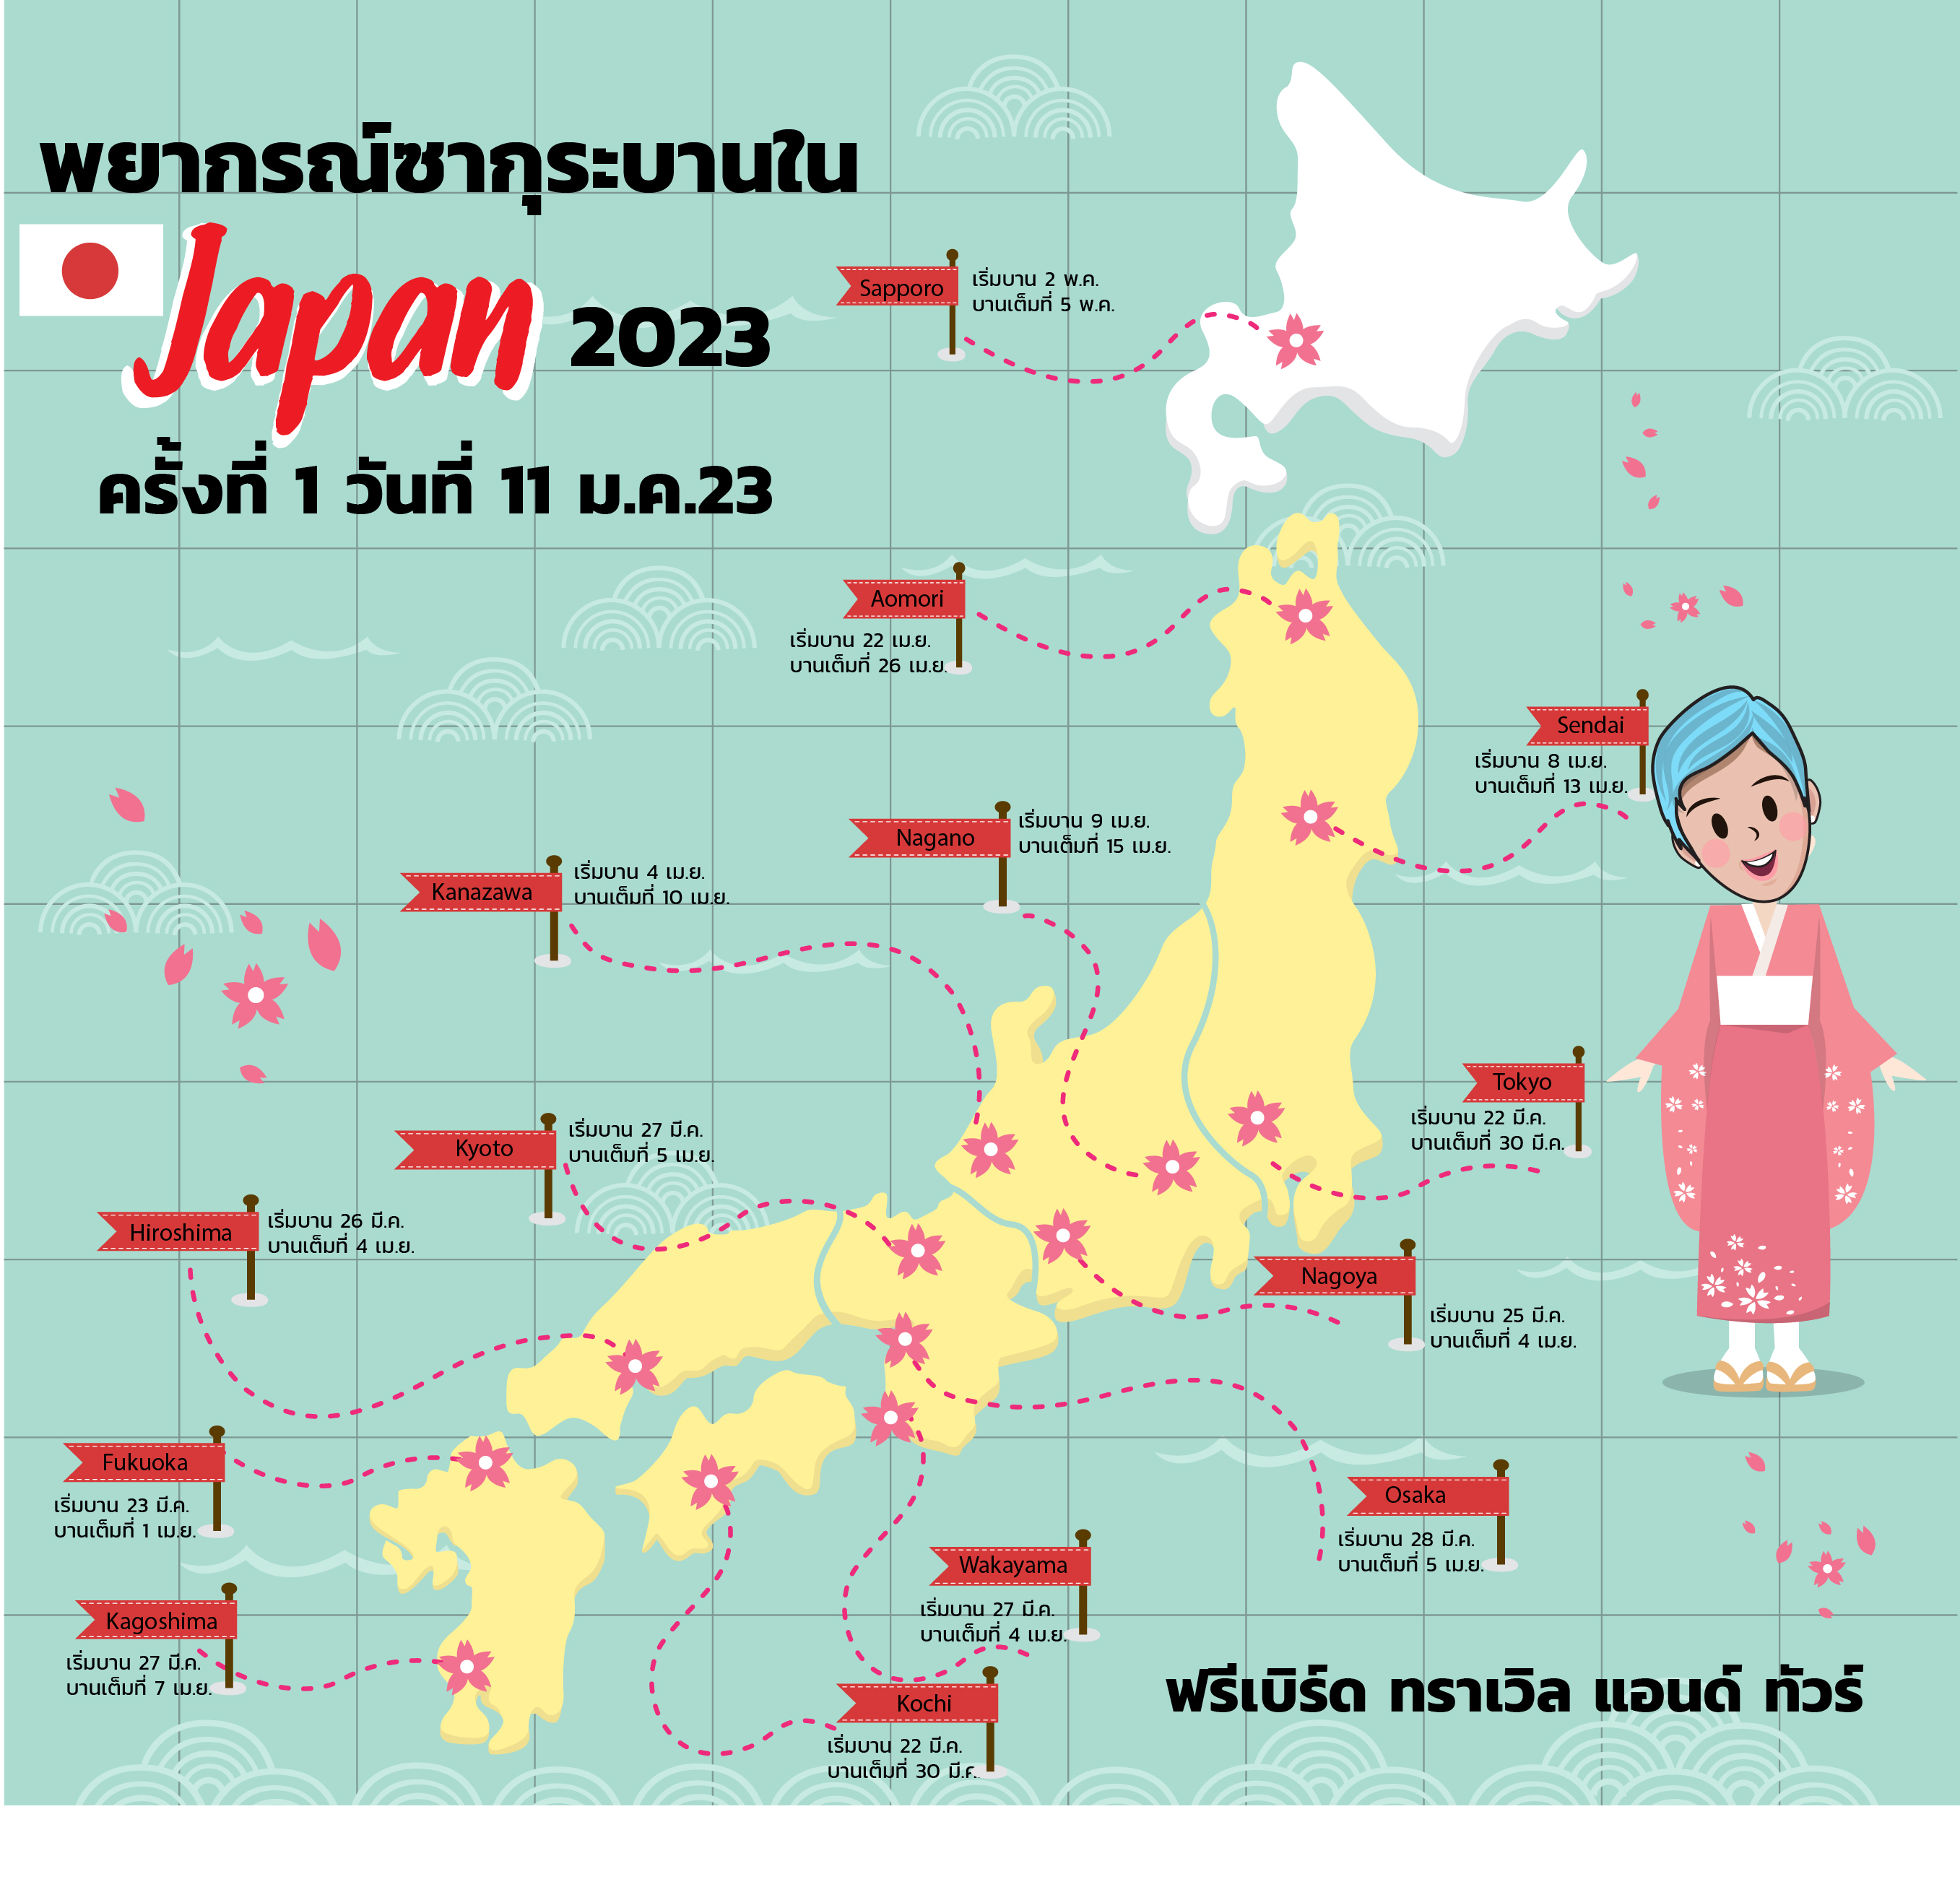 พยากรณ์ซากุระบานที่ญี่ปุ่น 2023